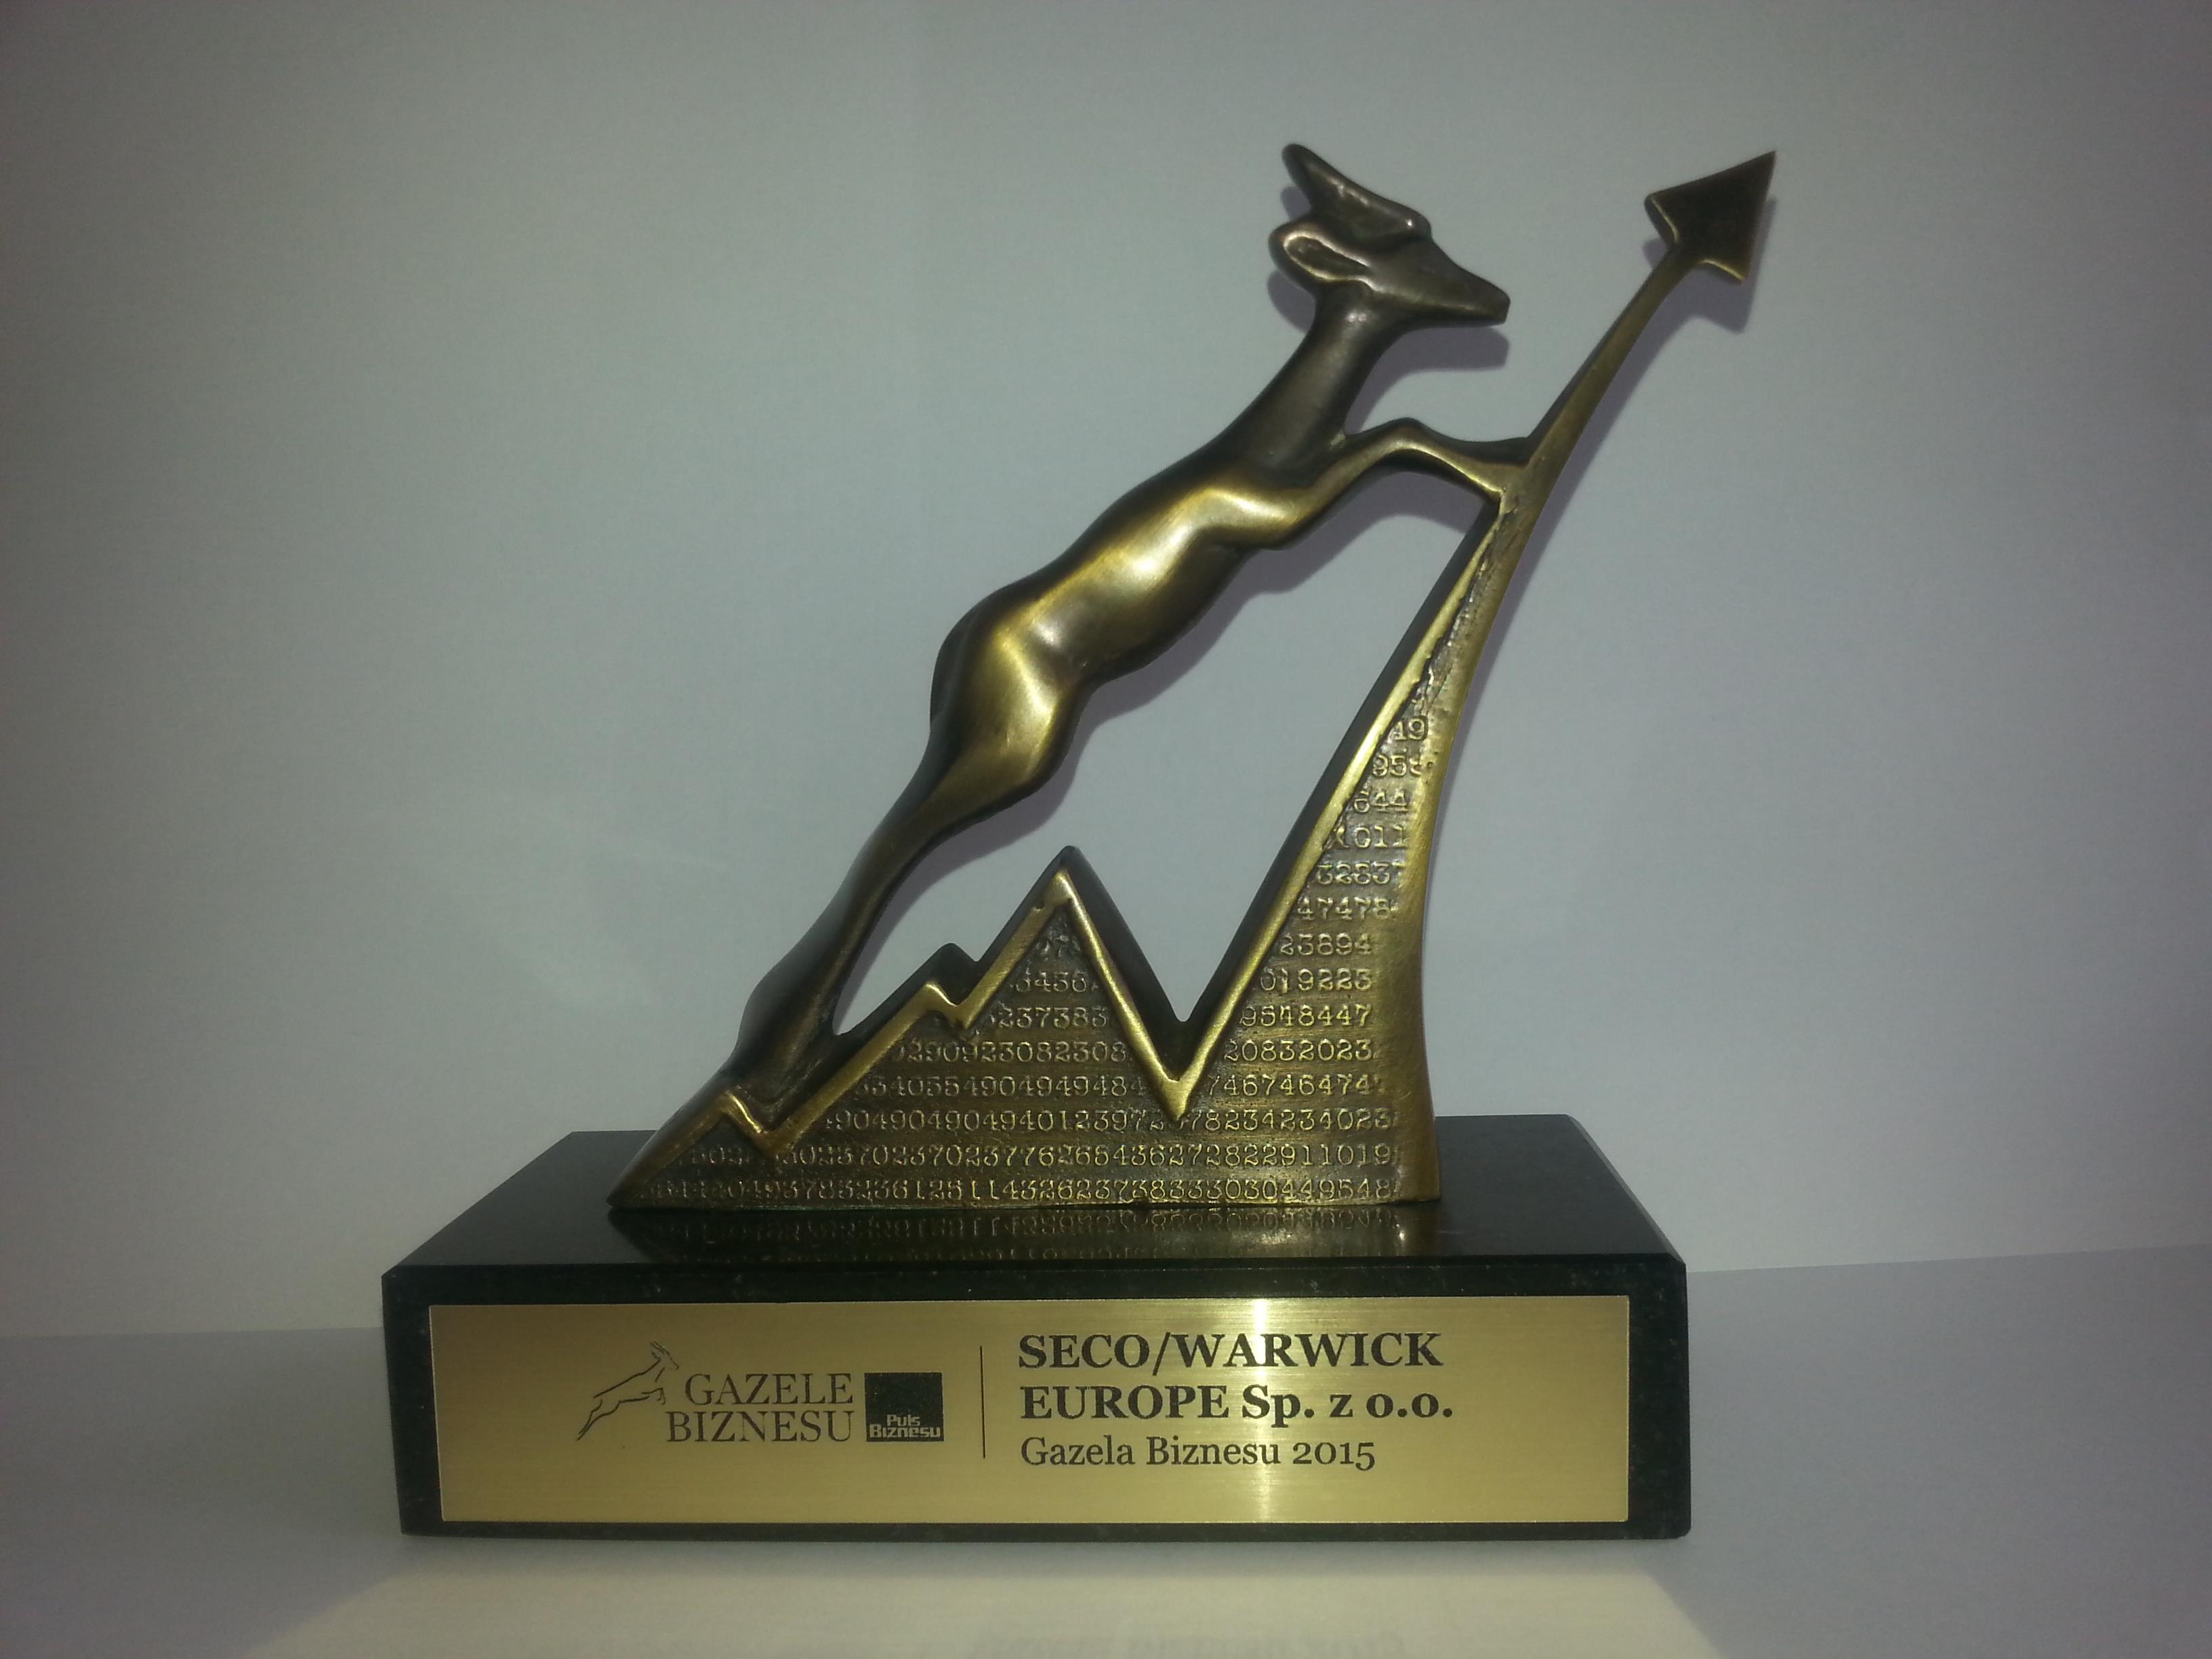 SECO/WARWICK wurde wieder  mit ‚Business Gazelle‘ ausgezeichnet